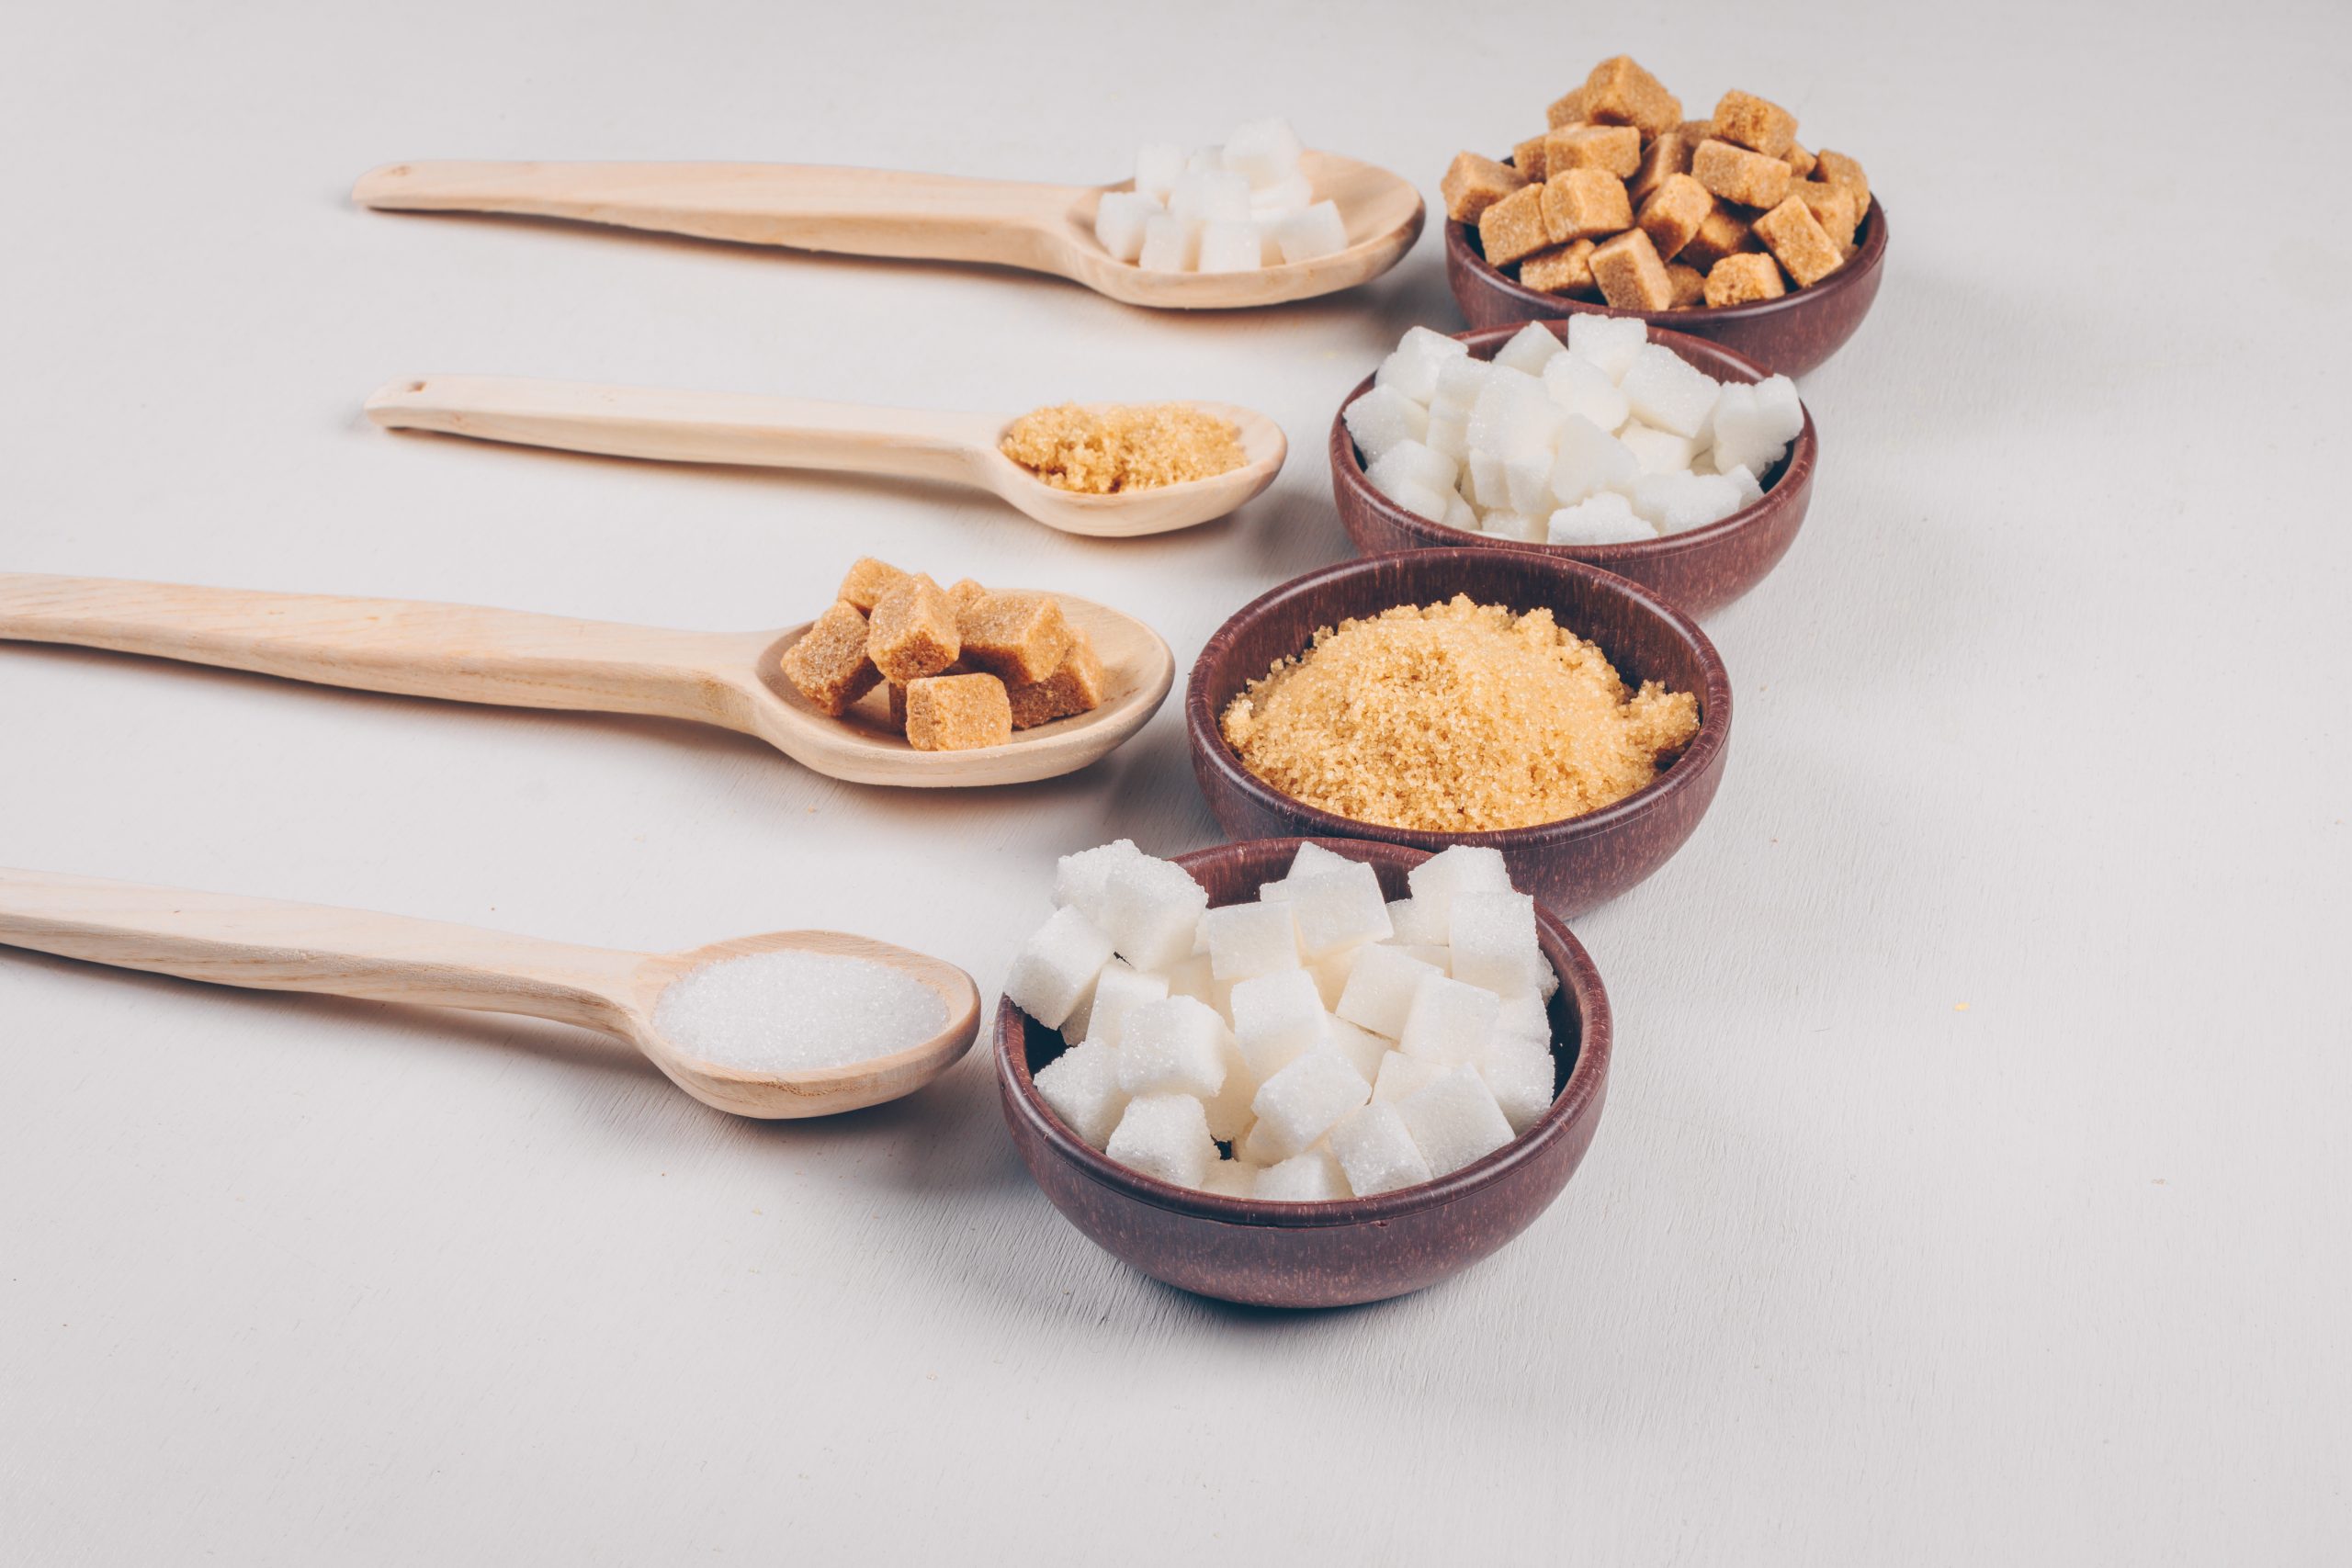 Είναι η Ζάχαρη Καρύδας η Καλύτερη Εναλλακτική Πηγή Ζάχαρης 24 scaled - Ζάχαρη Καρύδας: Είναι η Καλύτερη Εναλλακτική Πηγή Ζάχαρης;